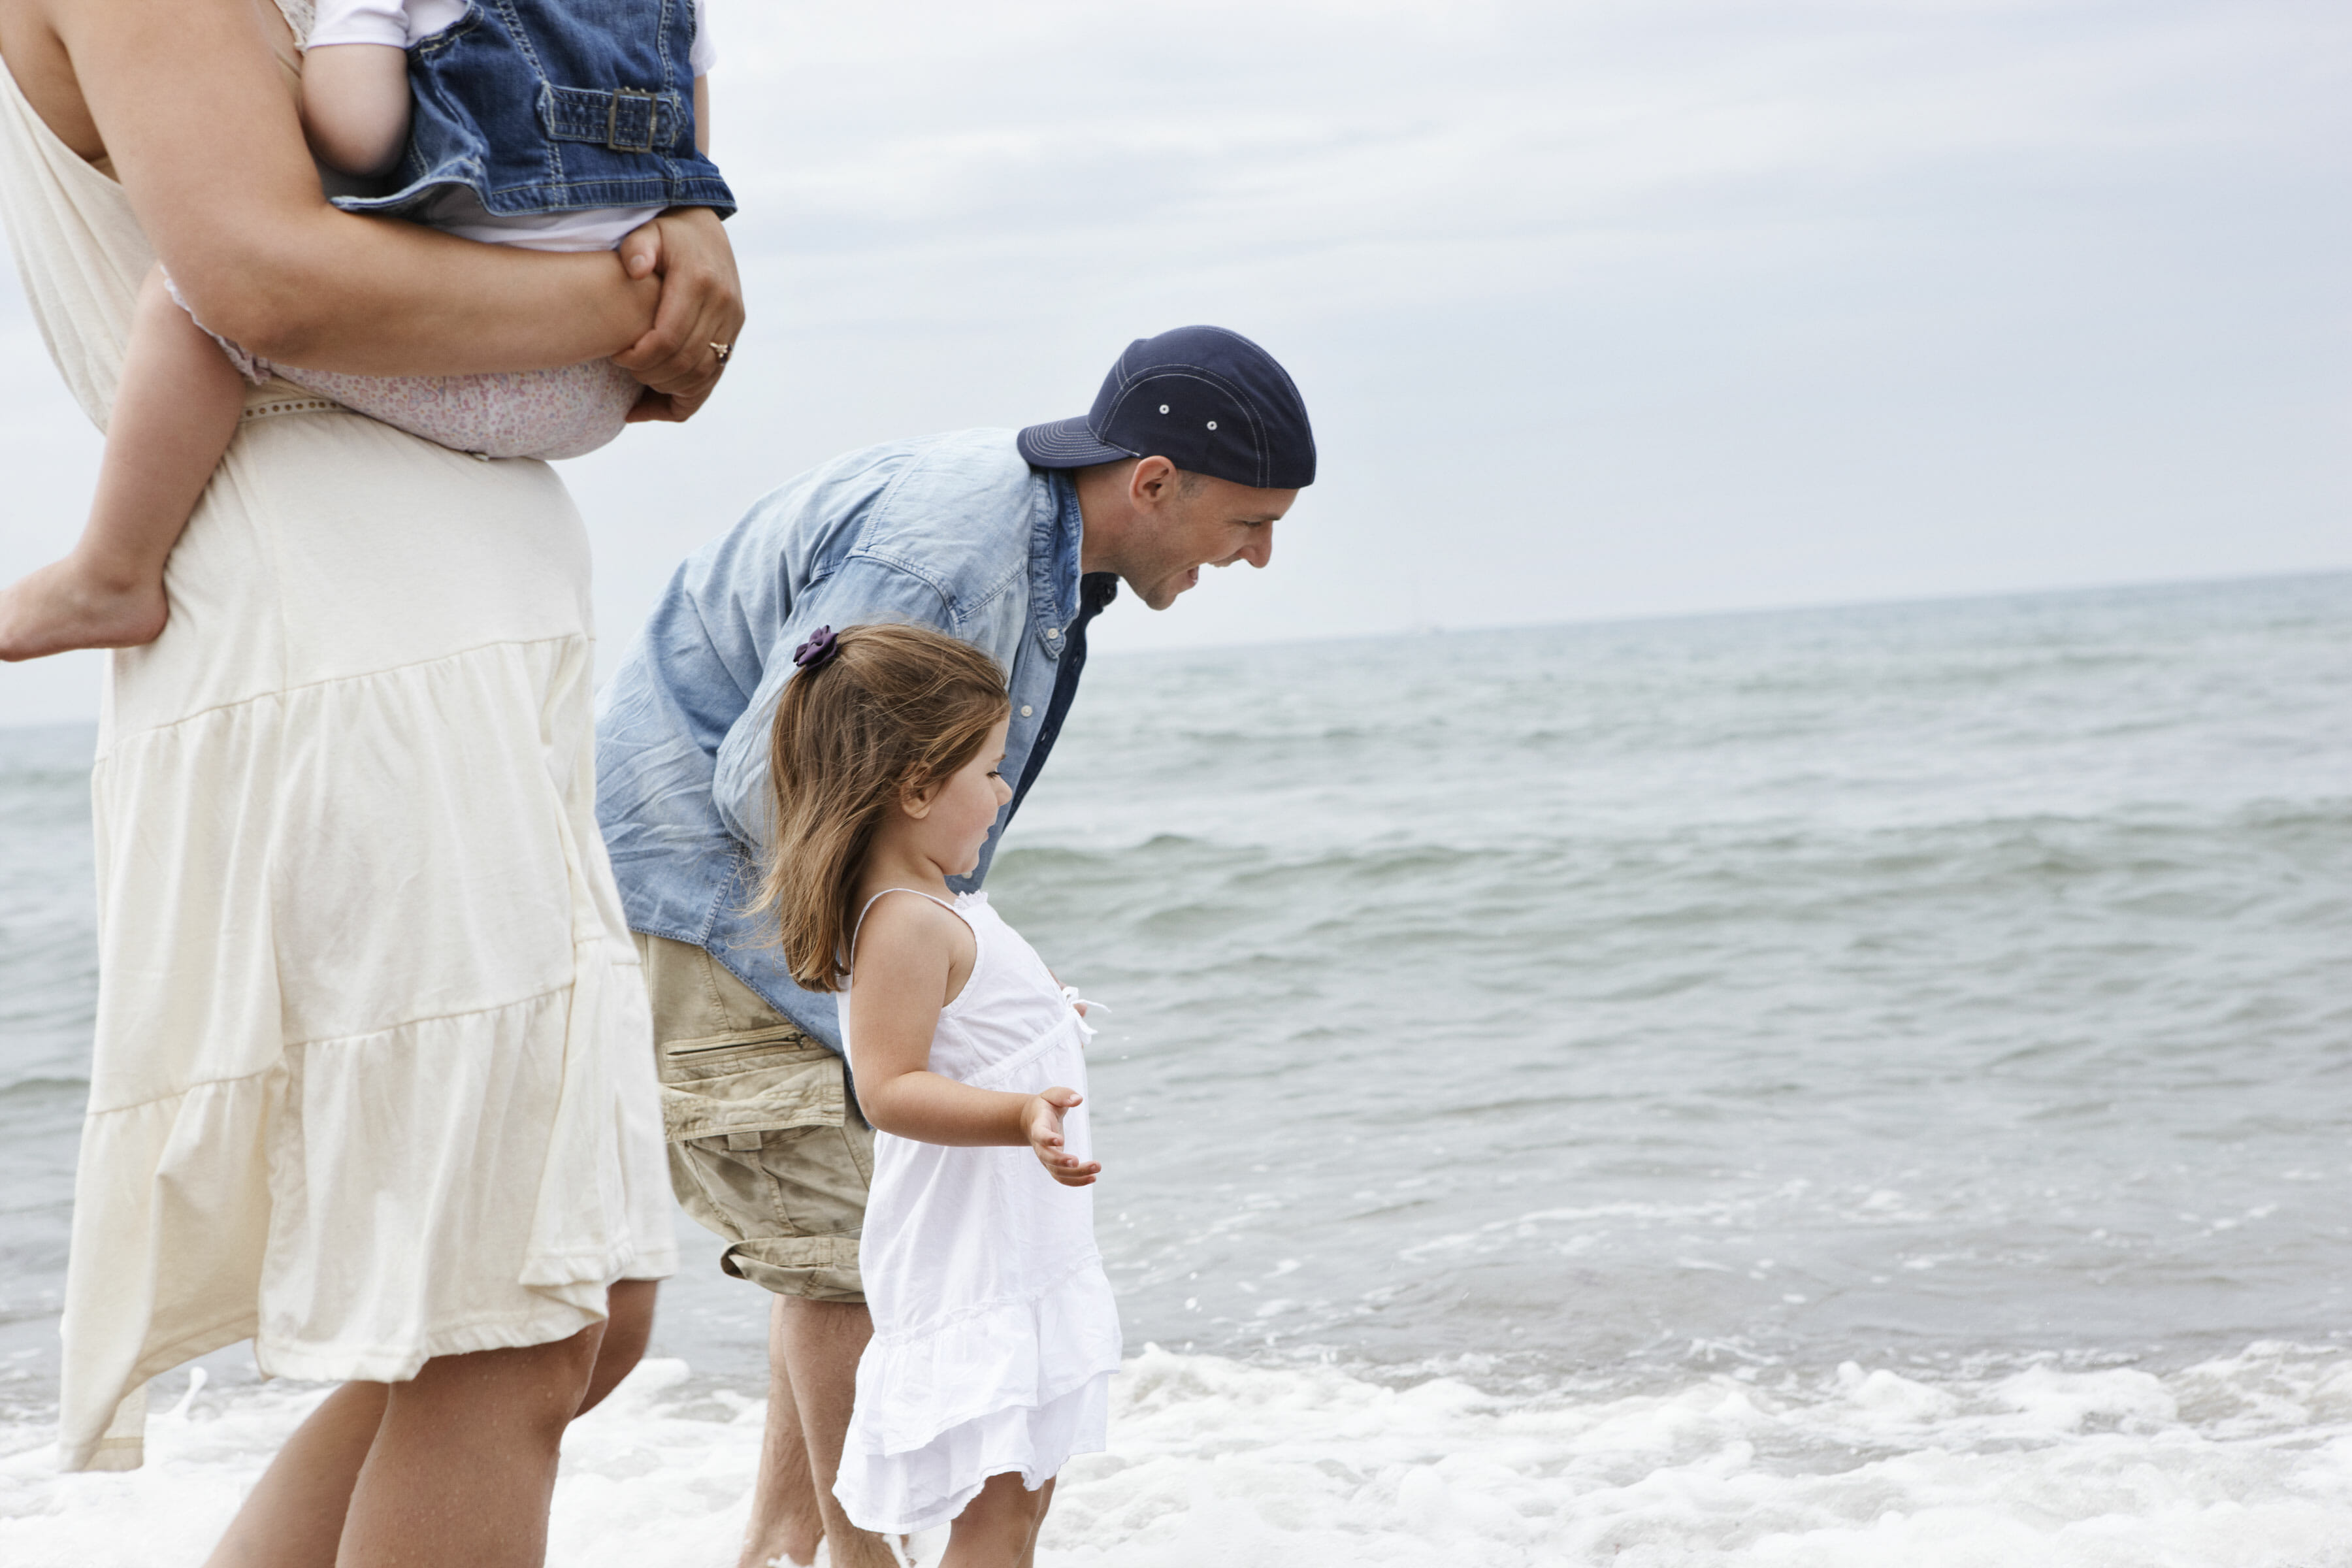 Fotografering af livsstil, billedbank, far og datter ved stranden © Foto Ida Schmidt